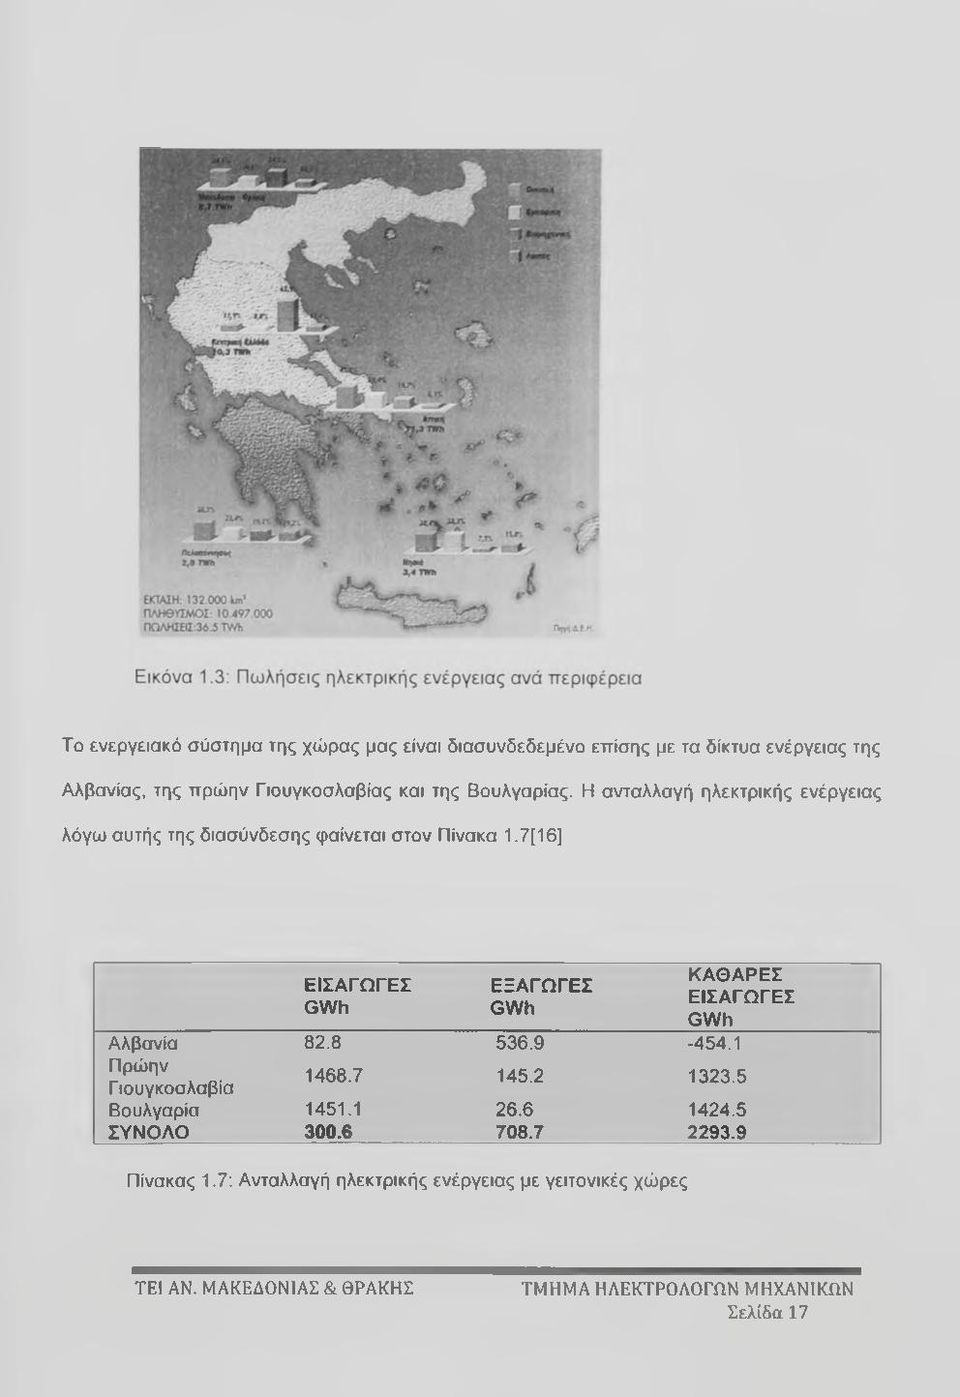 7[16] ΕΙΣΑΓΩΓΕΣ GWh ΕΞΑΓΩΓΕΣ GWh ΚΑΘΑΡΕΣ ΕΙΣΑΓΩΓΕΣ GWh Αλβανία 82.8 536.9-454.1 Πρώην Γιουγκοσλαβία 1468.7 145.2 1323.